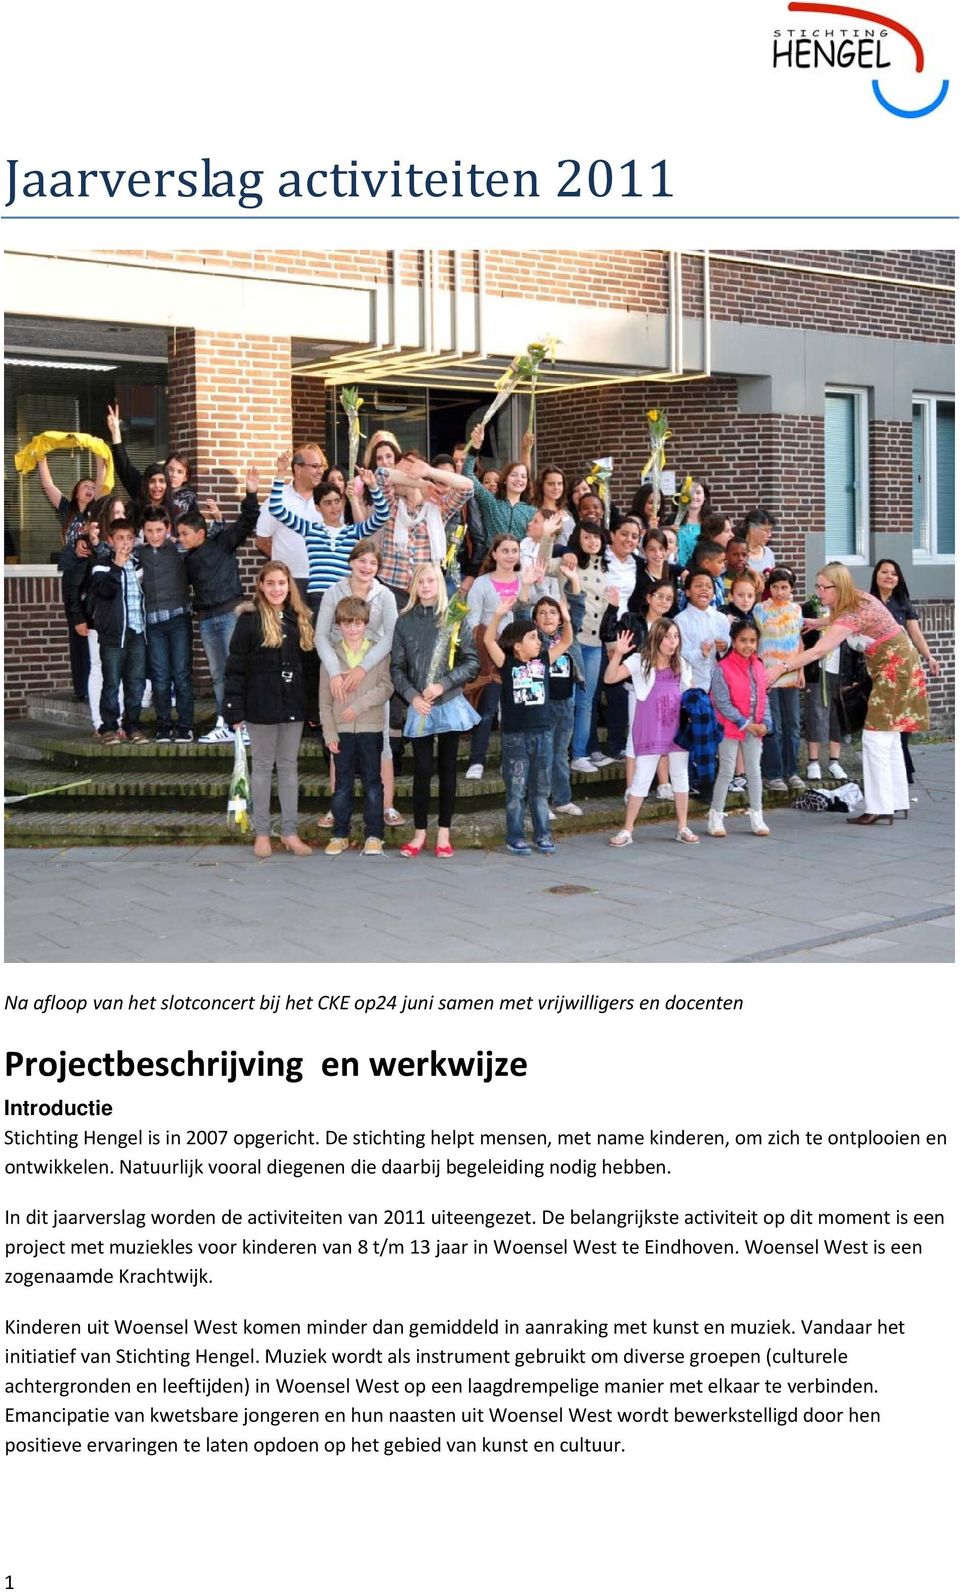 In dit jaarverslag worden de activiteiten van 2011 uiteengezet. De belangrijkste activiteit op dit moment is een project met muziekles voor kinderen van 8 t/m 13 jaar in Woensel West te Eindhoven.